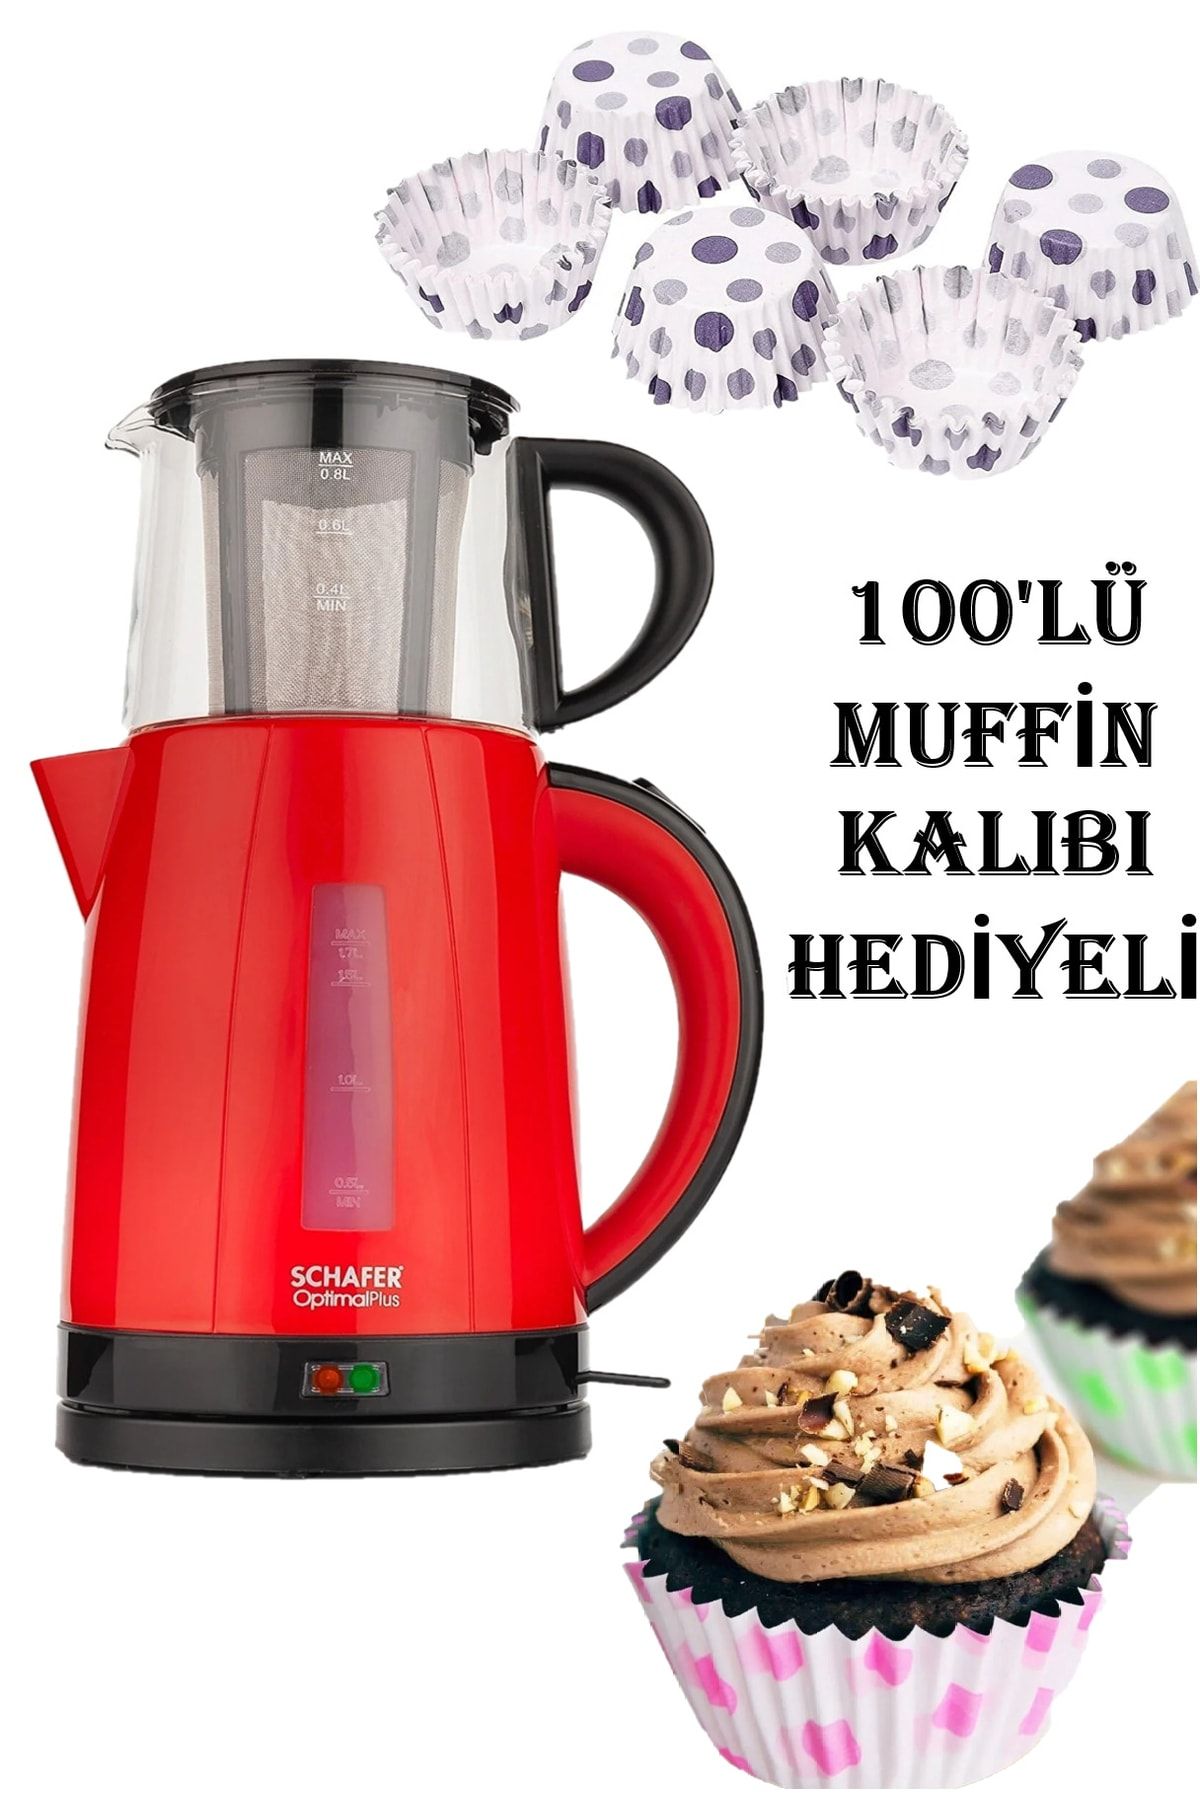 Schafer Hediyeli Kırmızı Optimal Plus Elektrikli Çay Makinesi 100lü Muffin Kalıbı Anneler Günü Özel